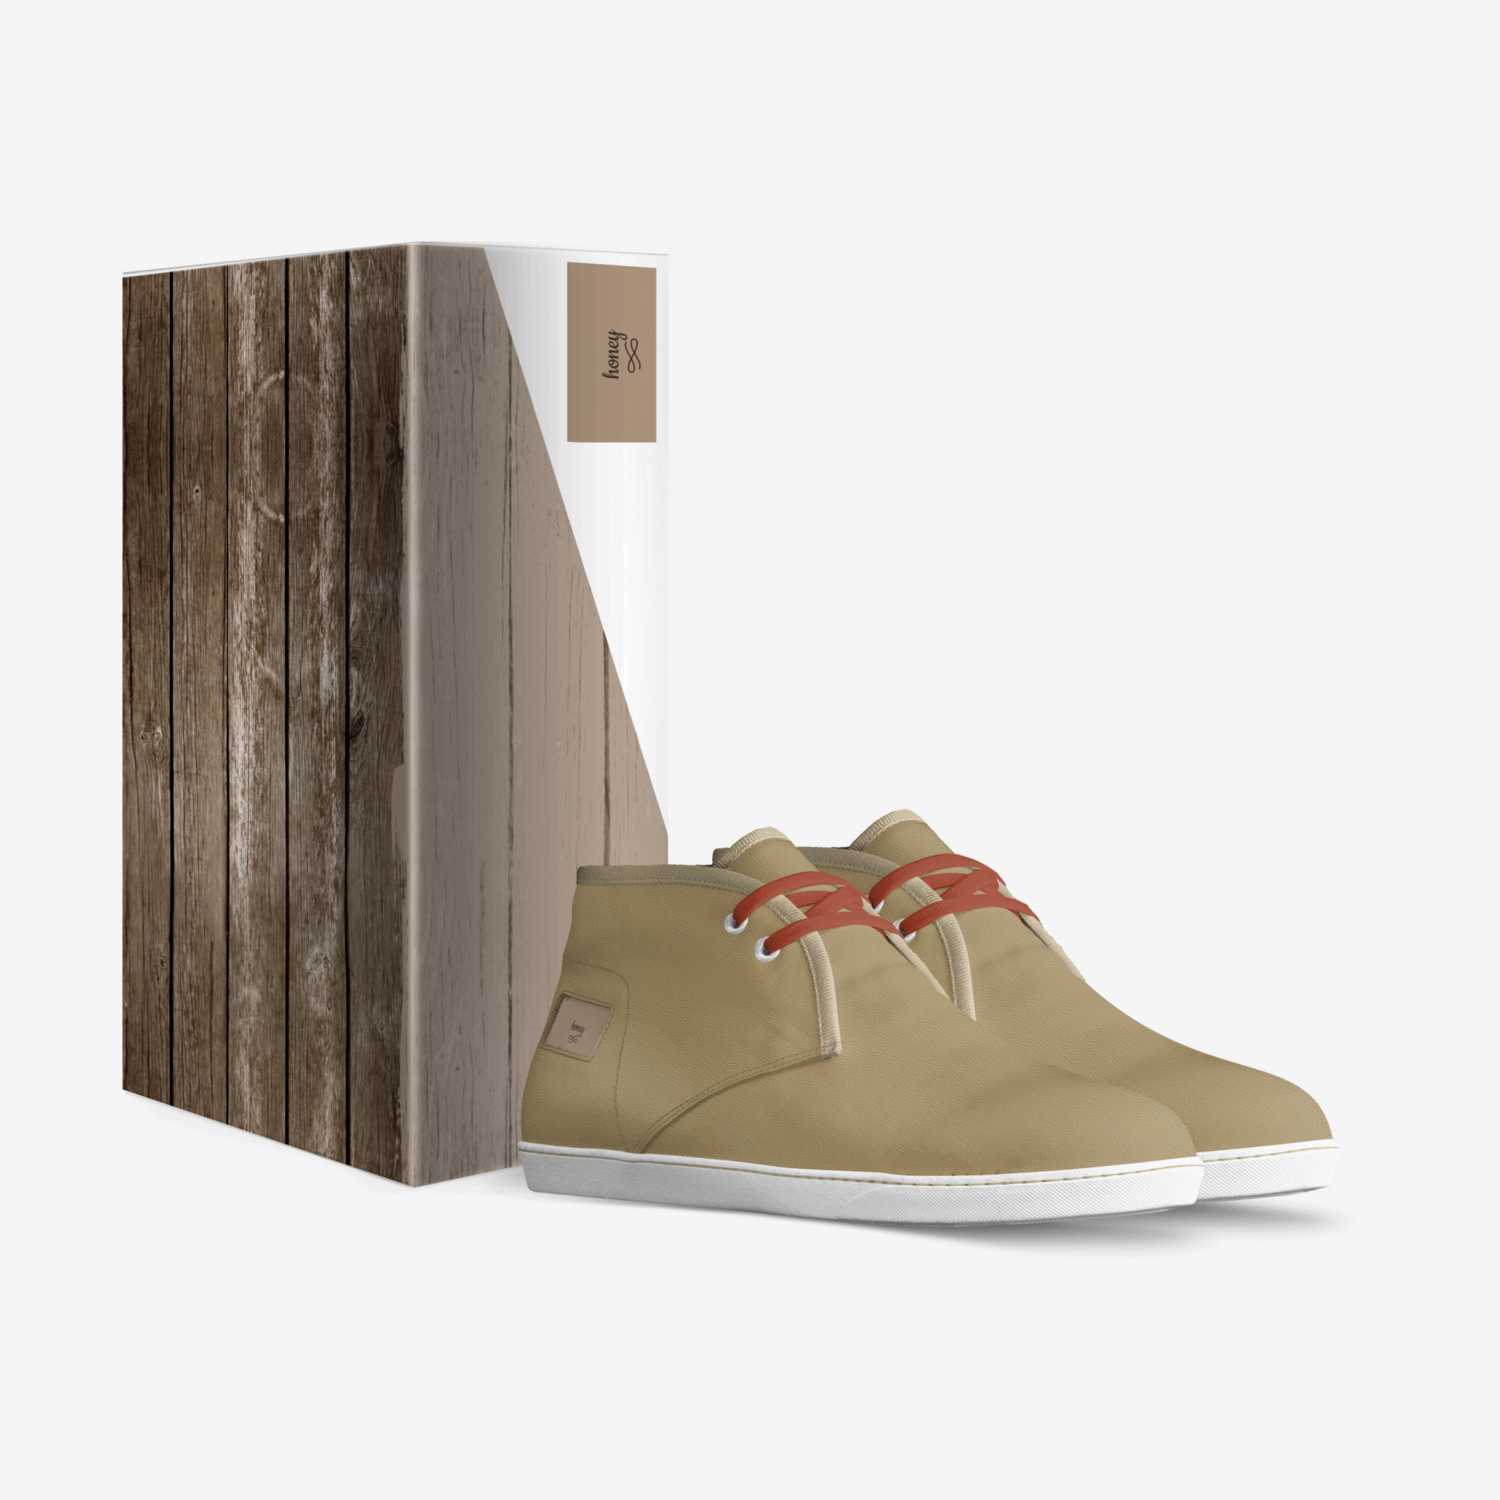 honey custom made in Italy shoes by Trinity Sullivan | Box view